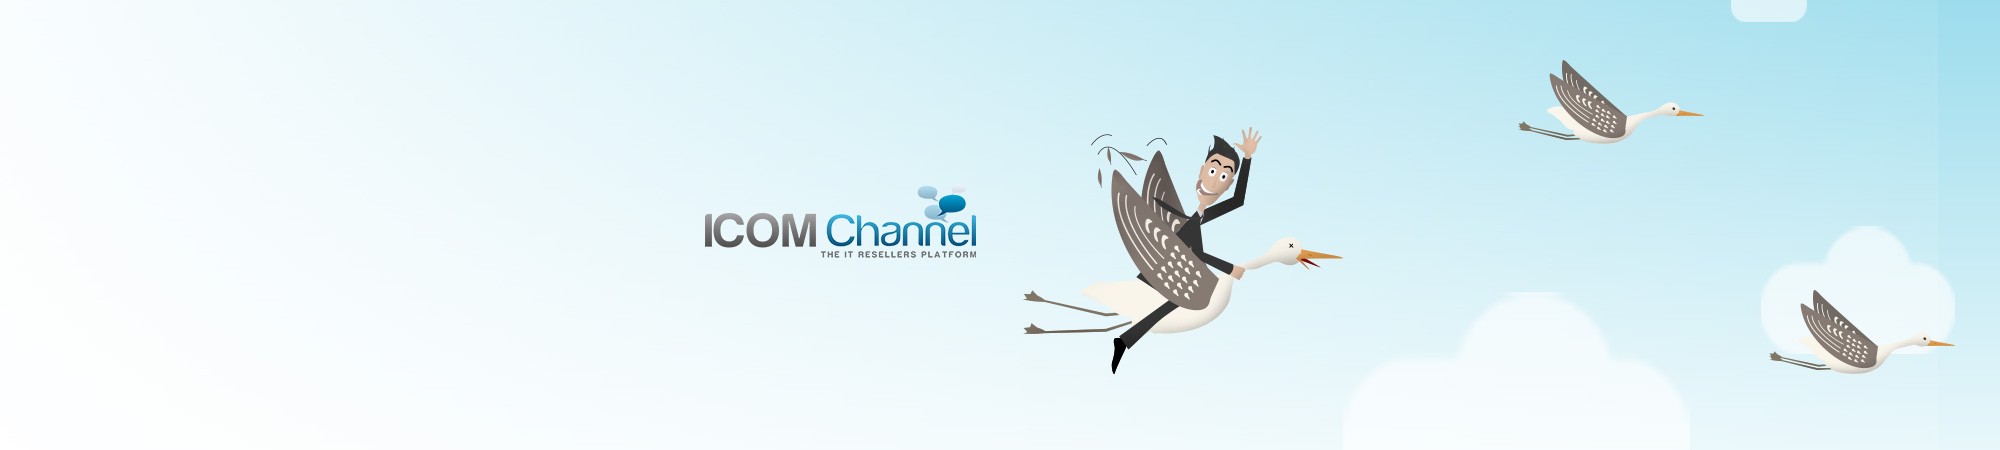  Création d’une campagne emailing pour ICOM Channel